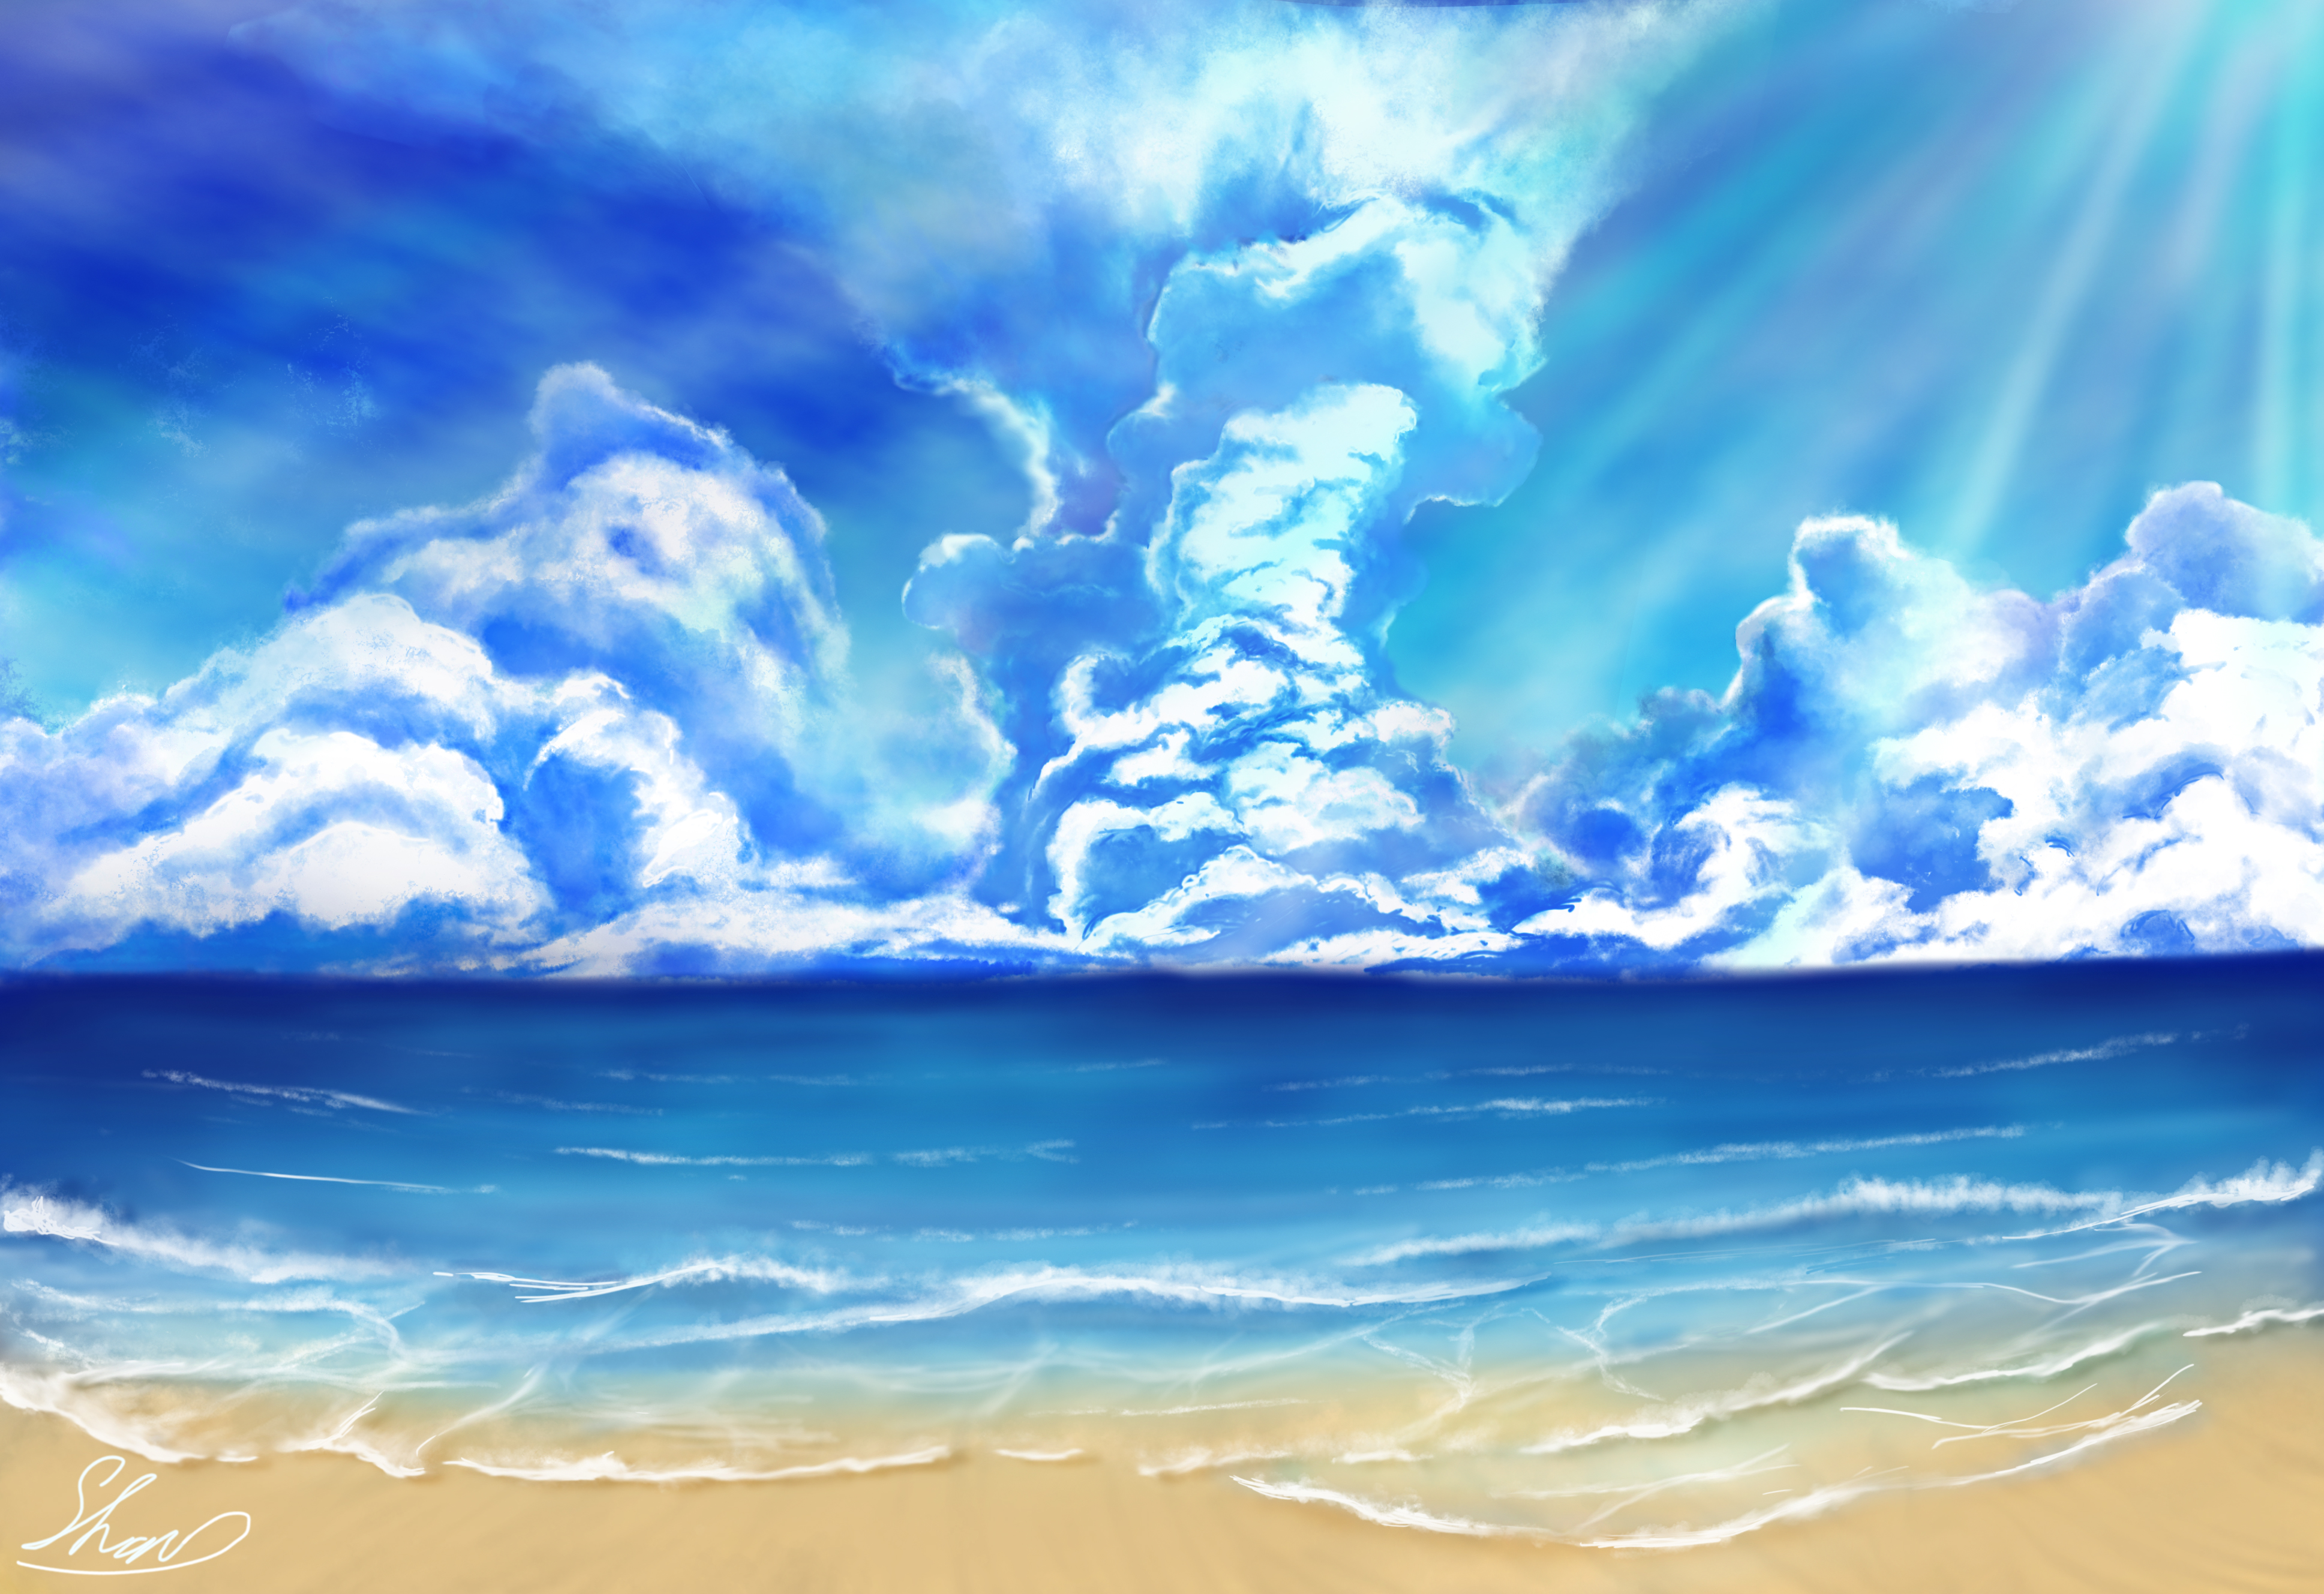 Скачать обои бесплатно Облака, Пляж, Океан, Художественные картинка на рабочий стол ПК